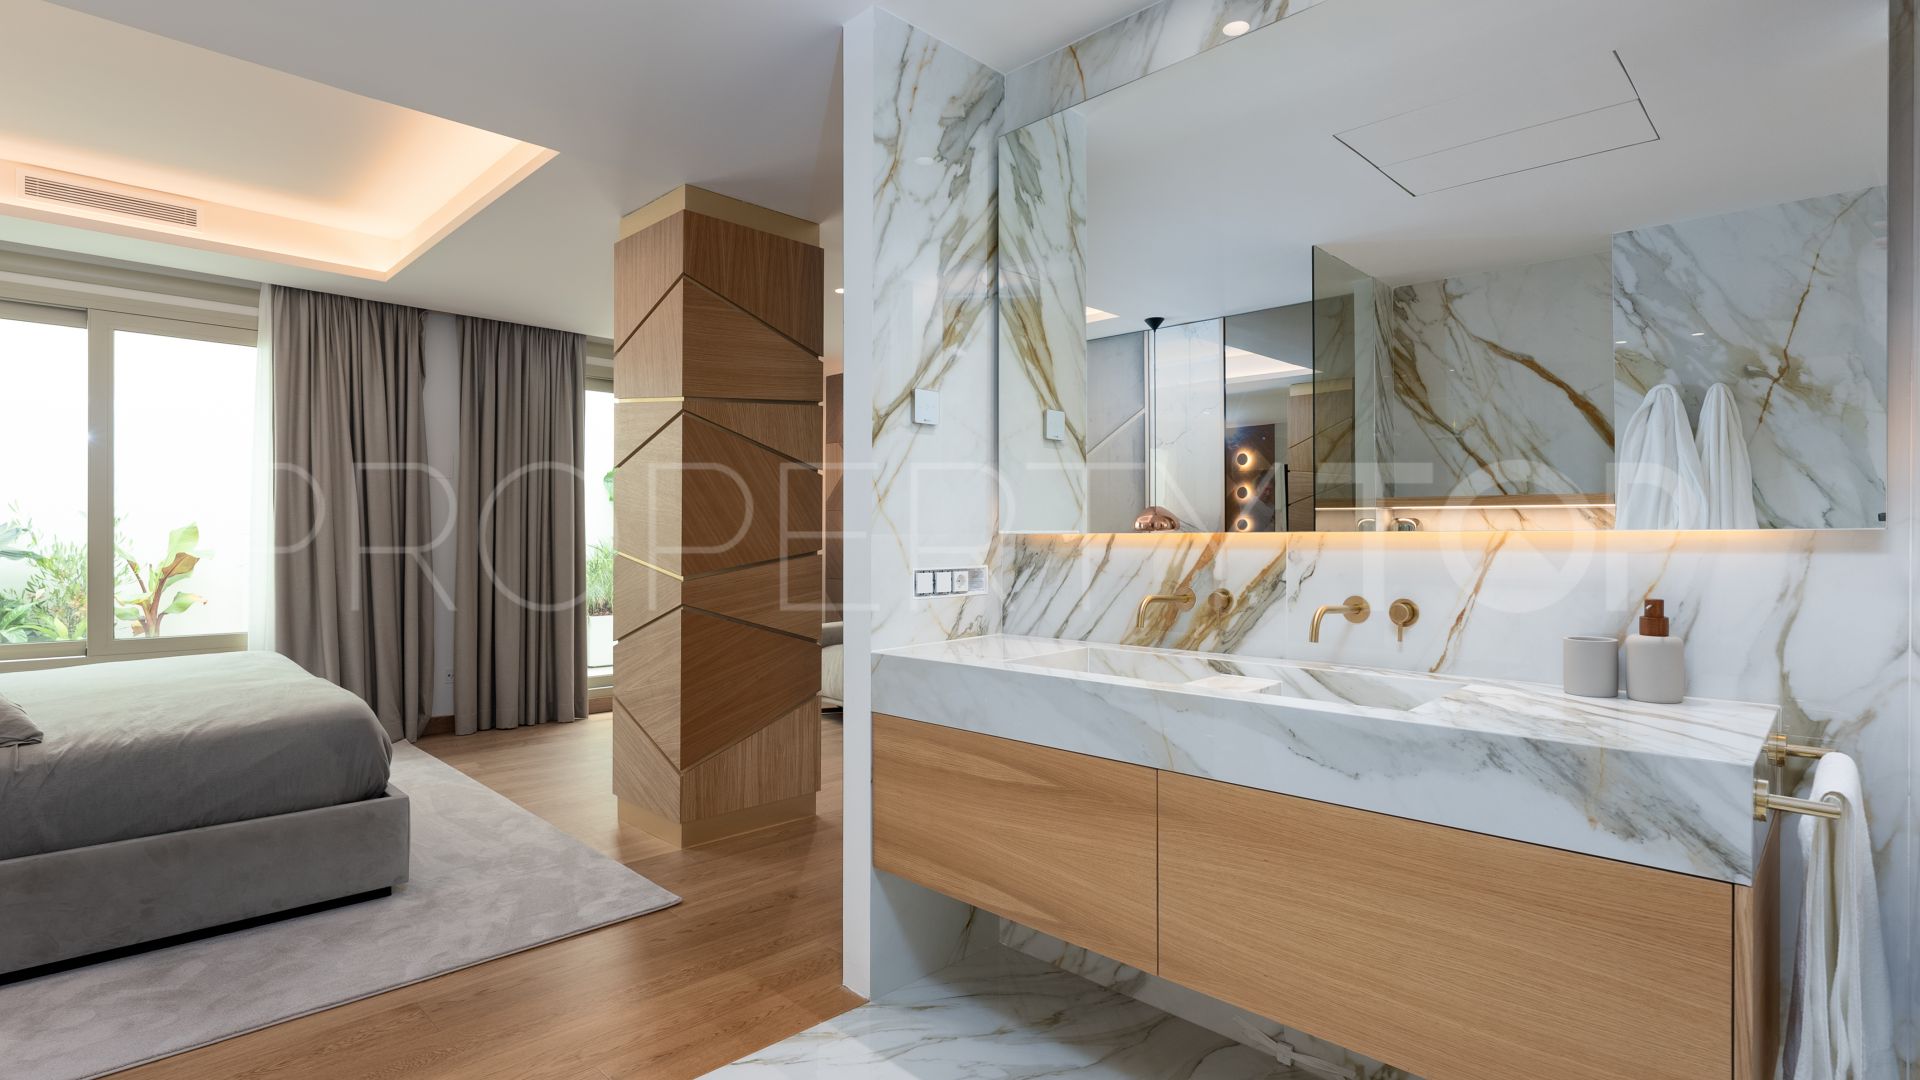 3 bedrooms ground floor duplex in Marbella Golden Mile for sale